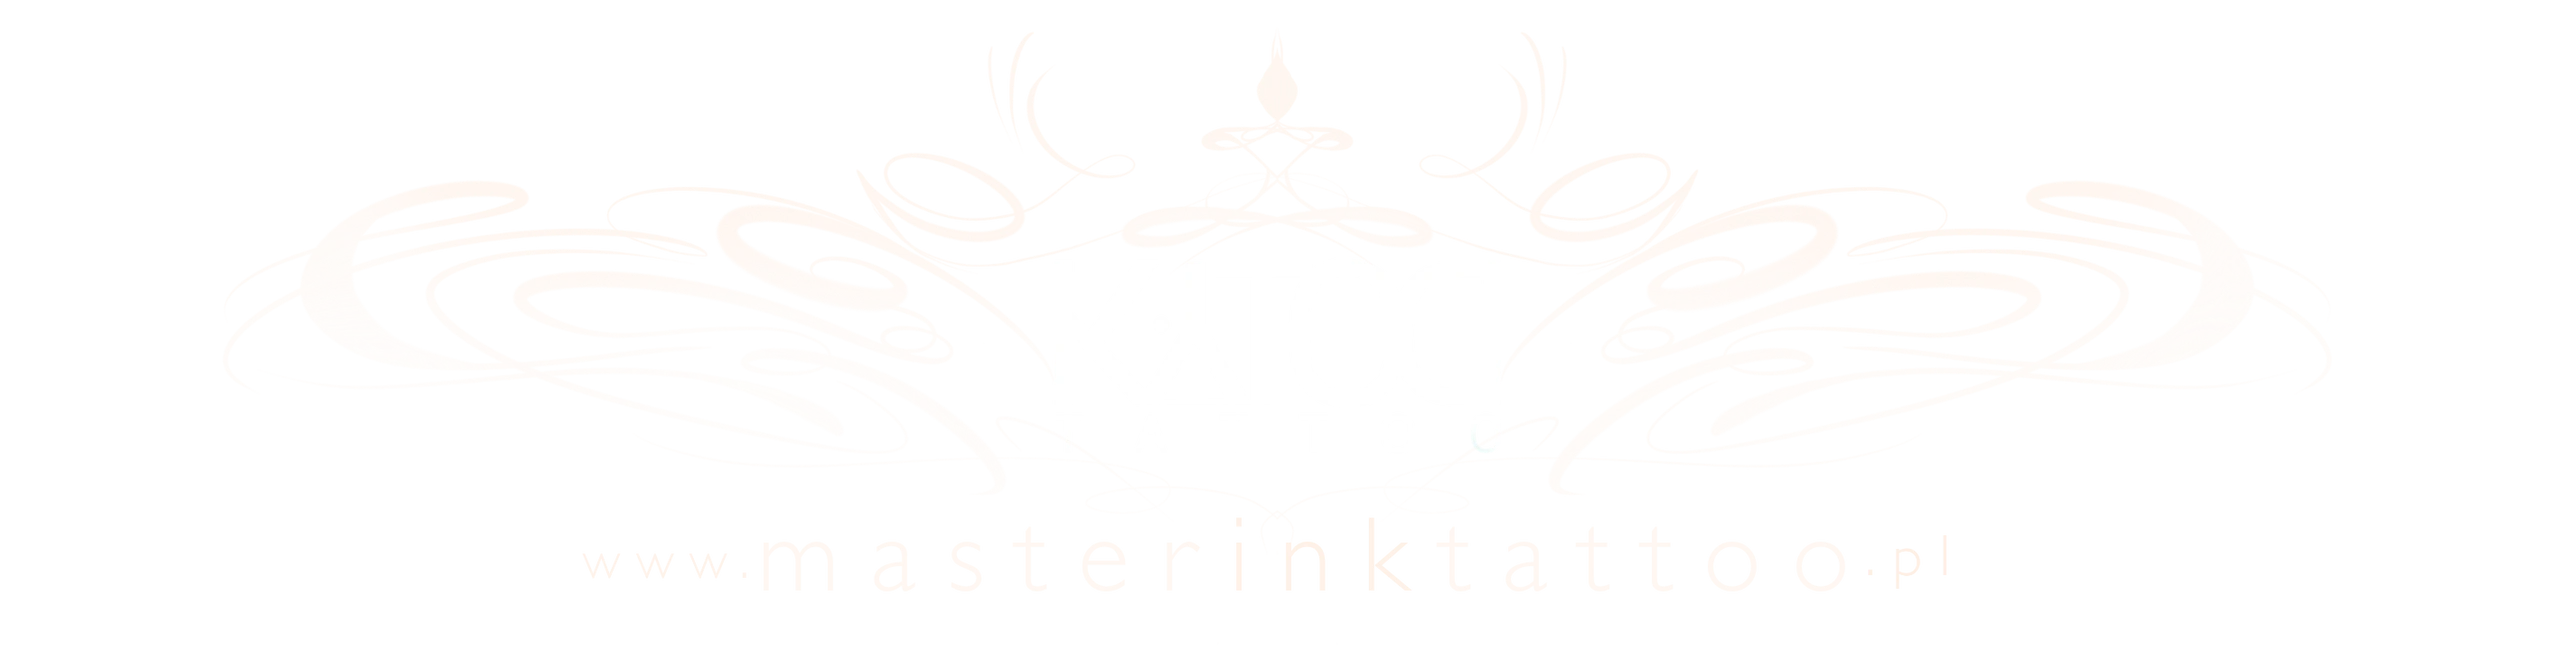 Tatuaż łódź
Profesjonalne wykonanie tatuażu
Najlepszy tatuator w łodzi😁🥳🫠
Wzory tatuażu.